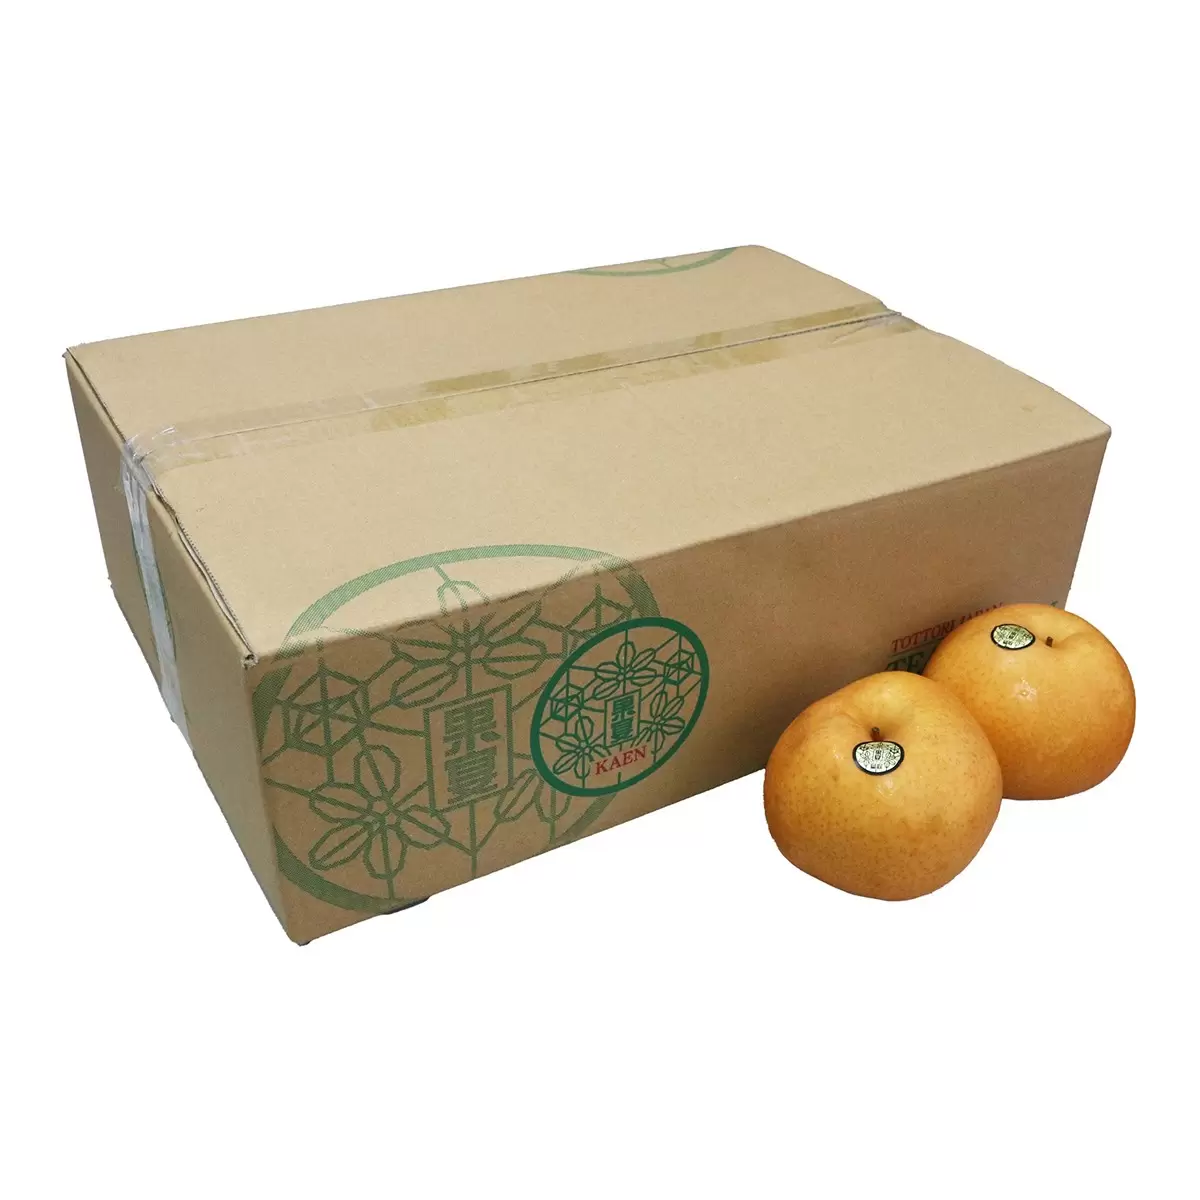 日本愛宕梨禮盒 5公斤(7-8入)